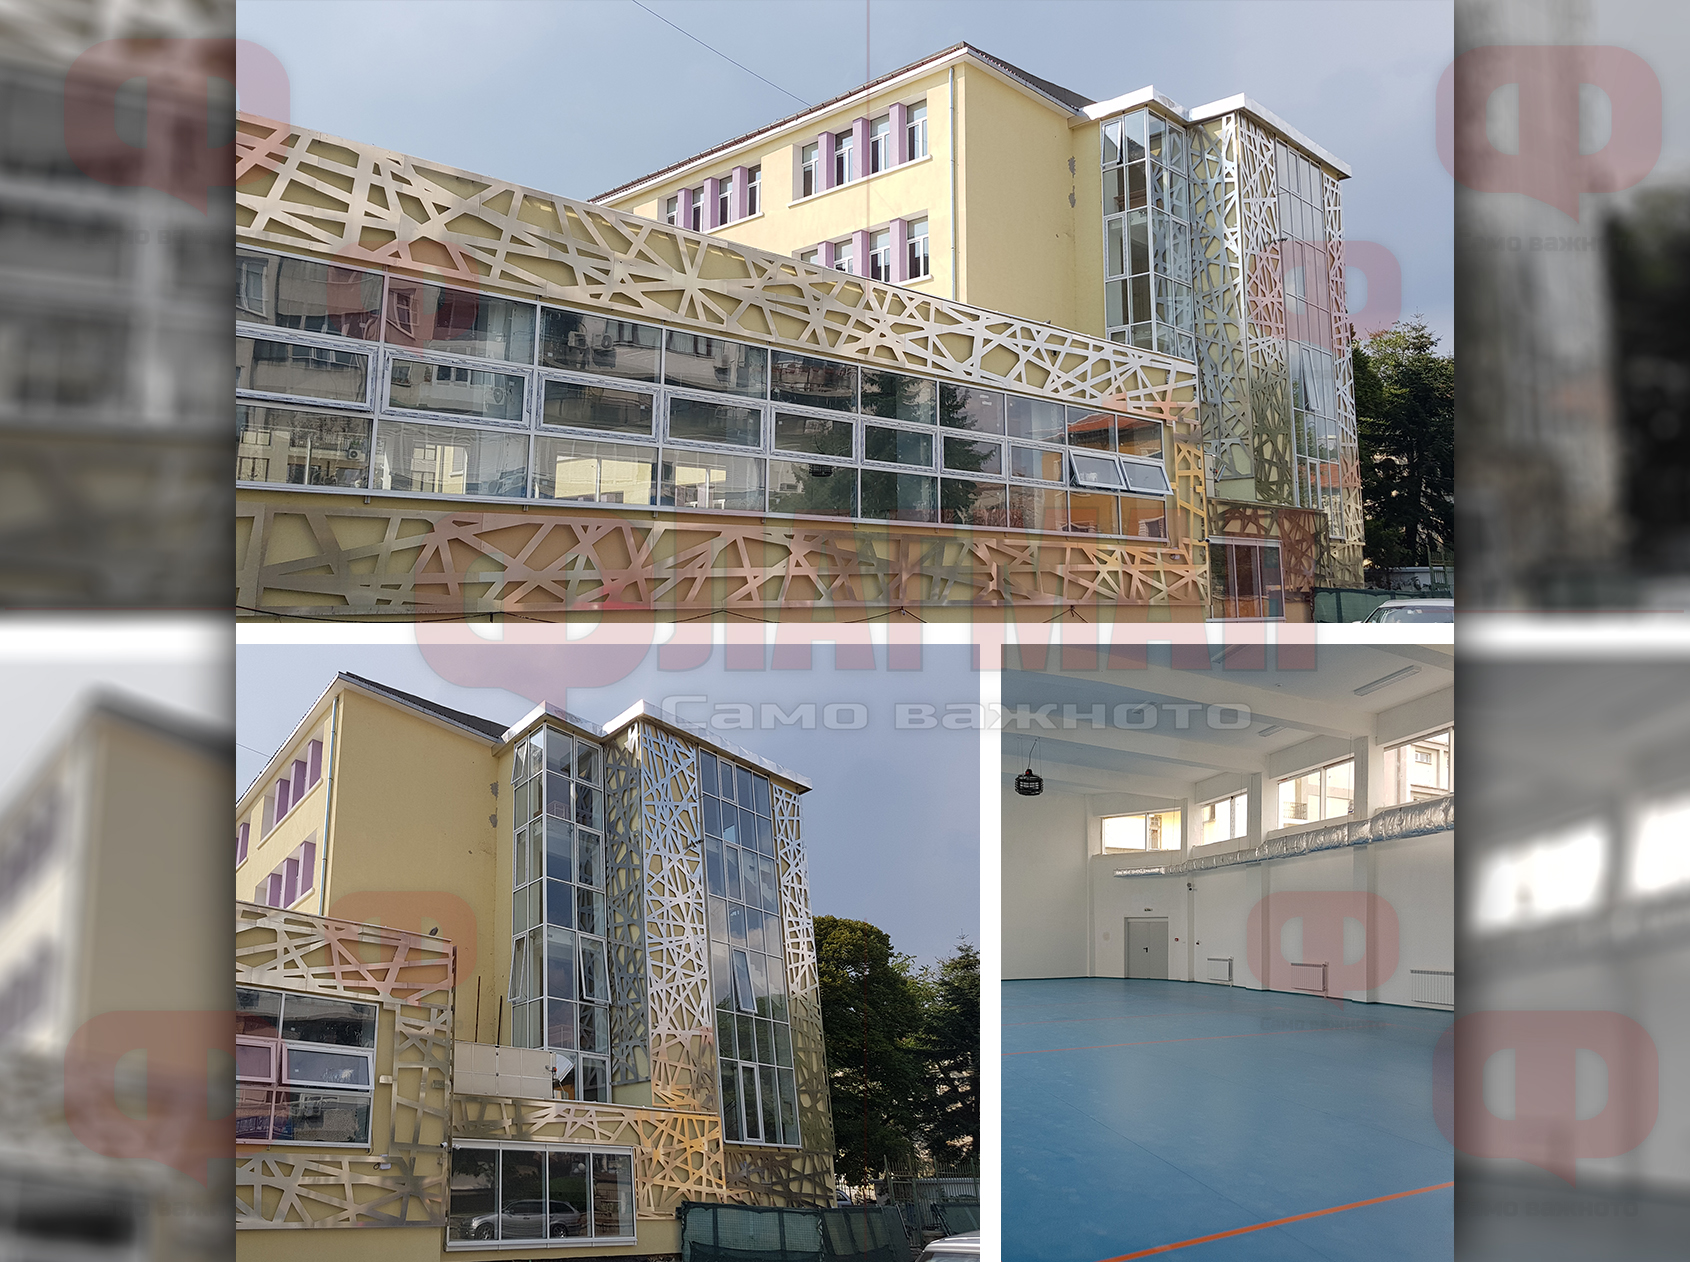 Първо във Флагман.БГ! Вижте новия физкултурен салон на Търговската гимназия в Бургас (СНИМКИ)